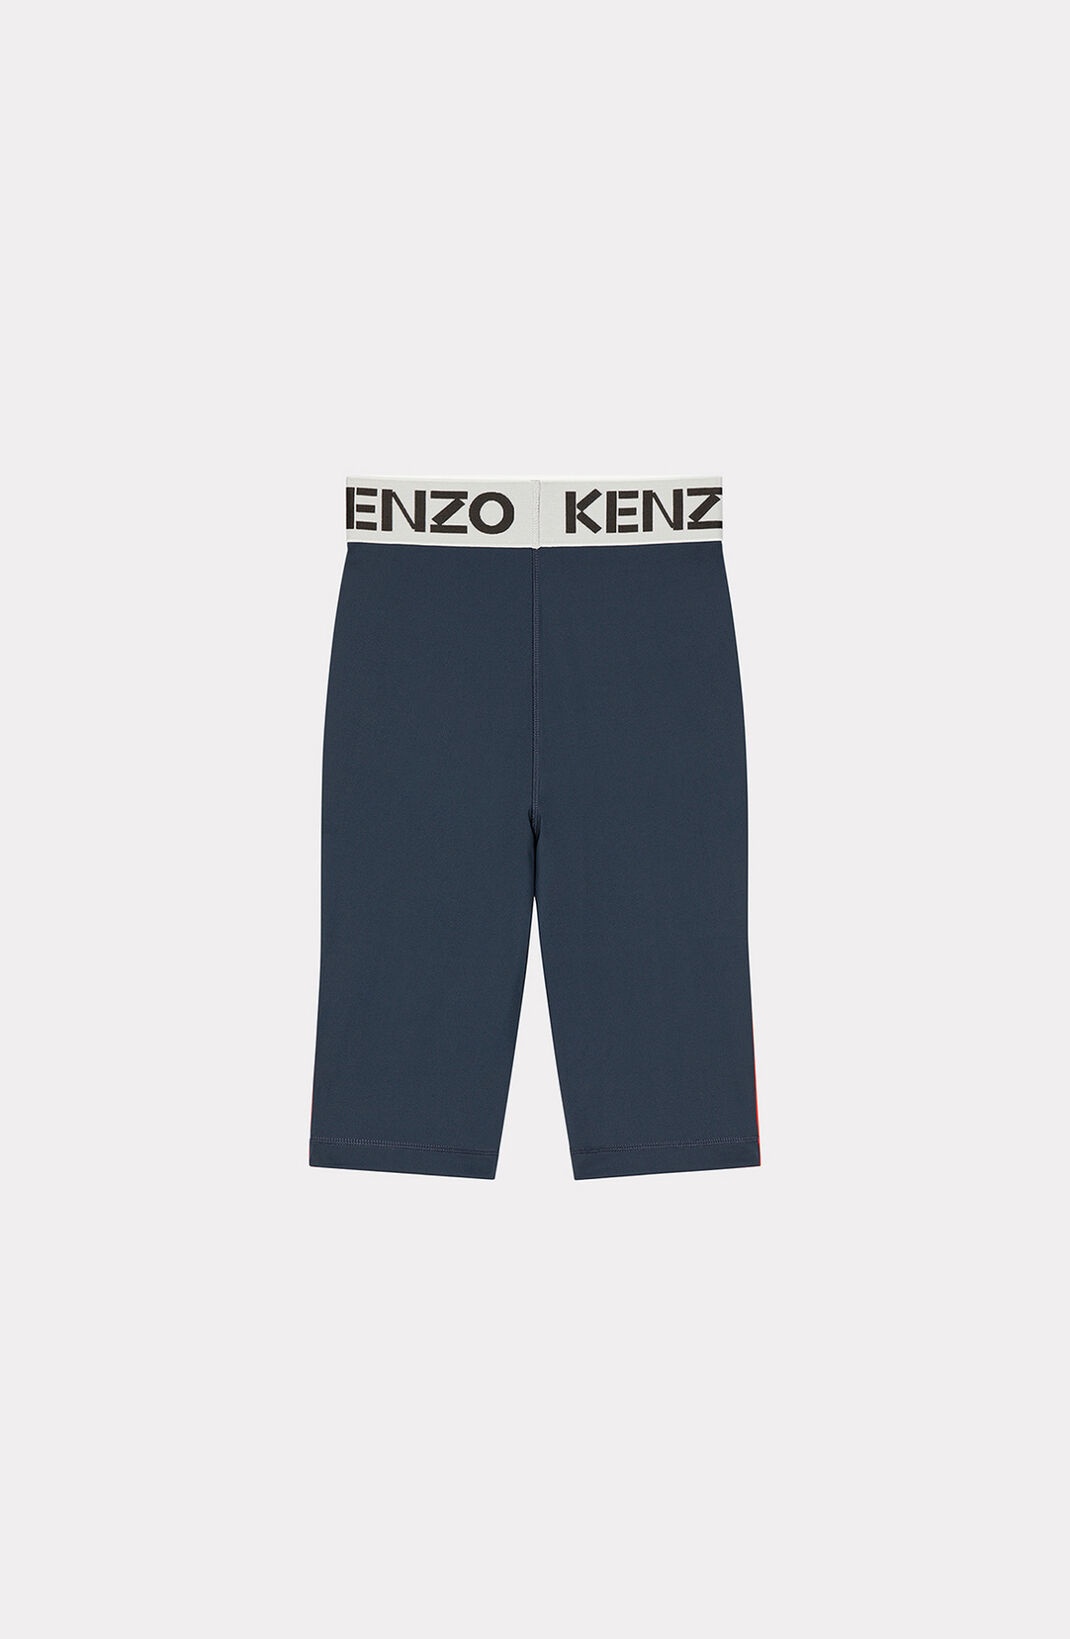 KENZO cycling shorts - 2